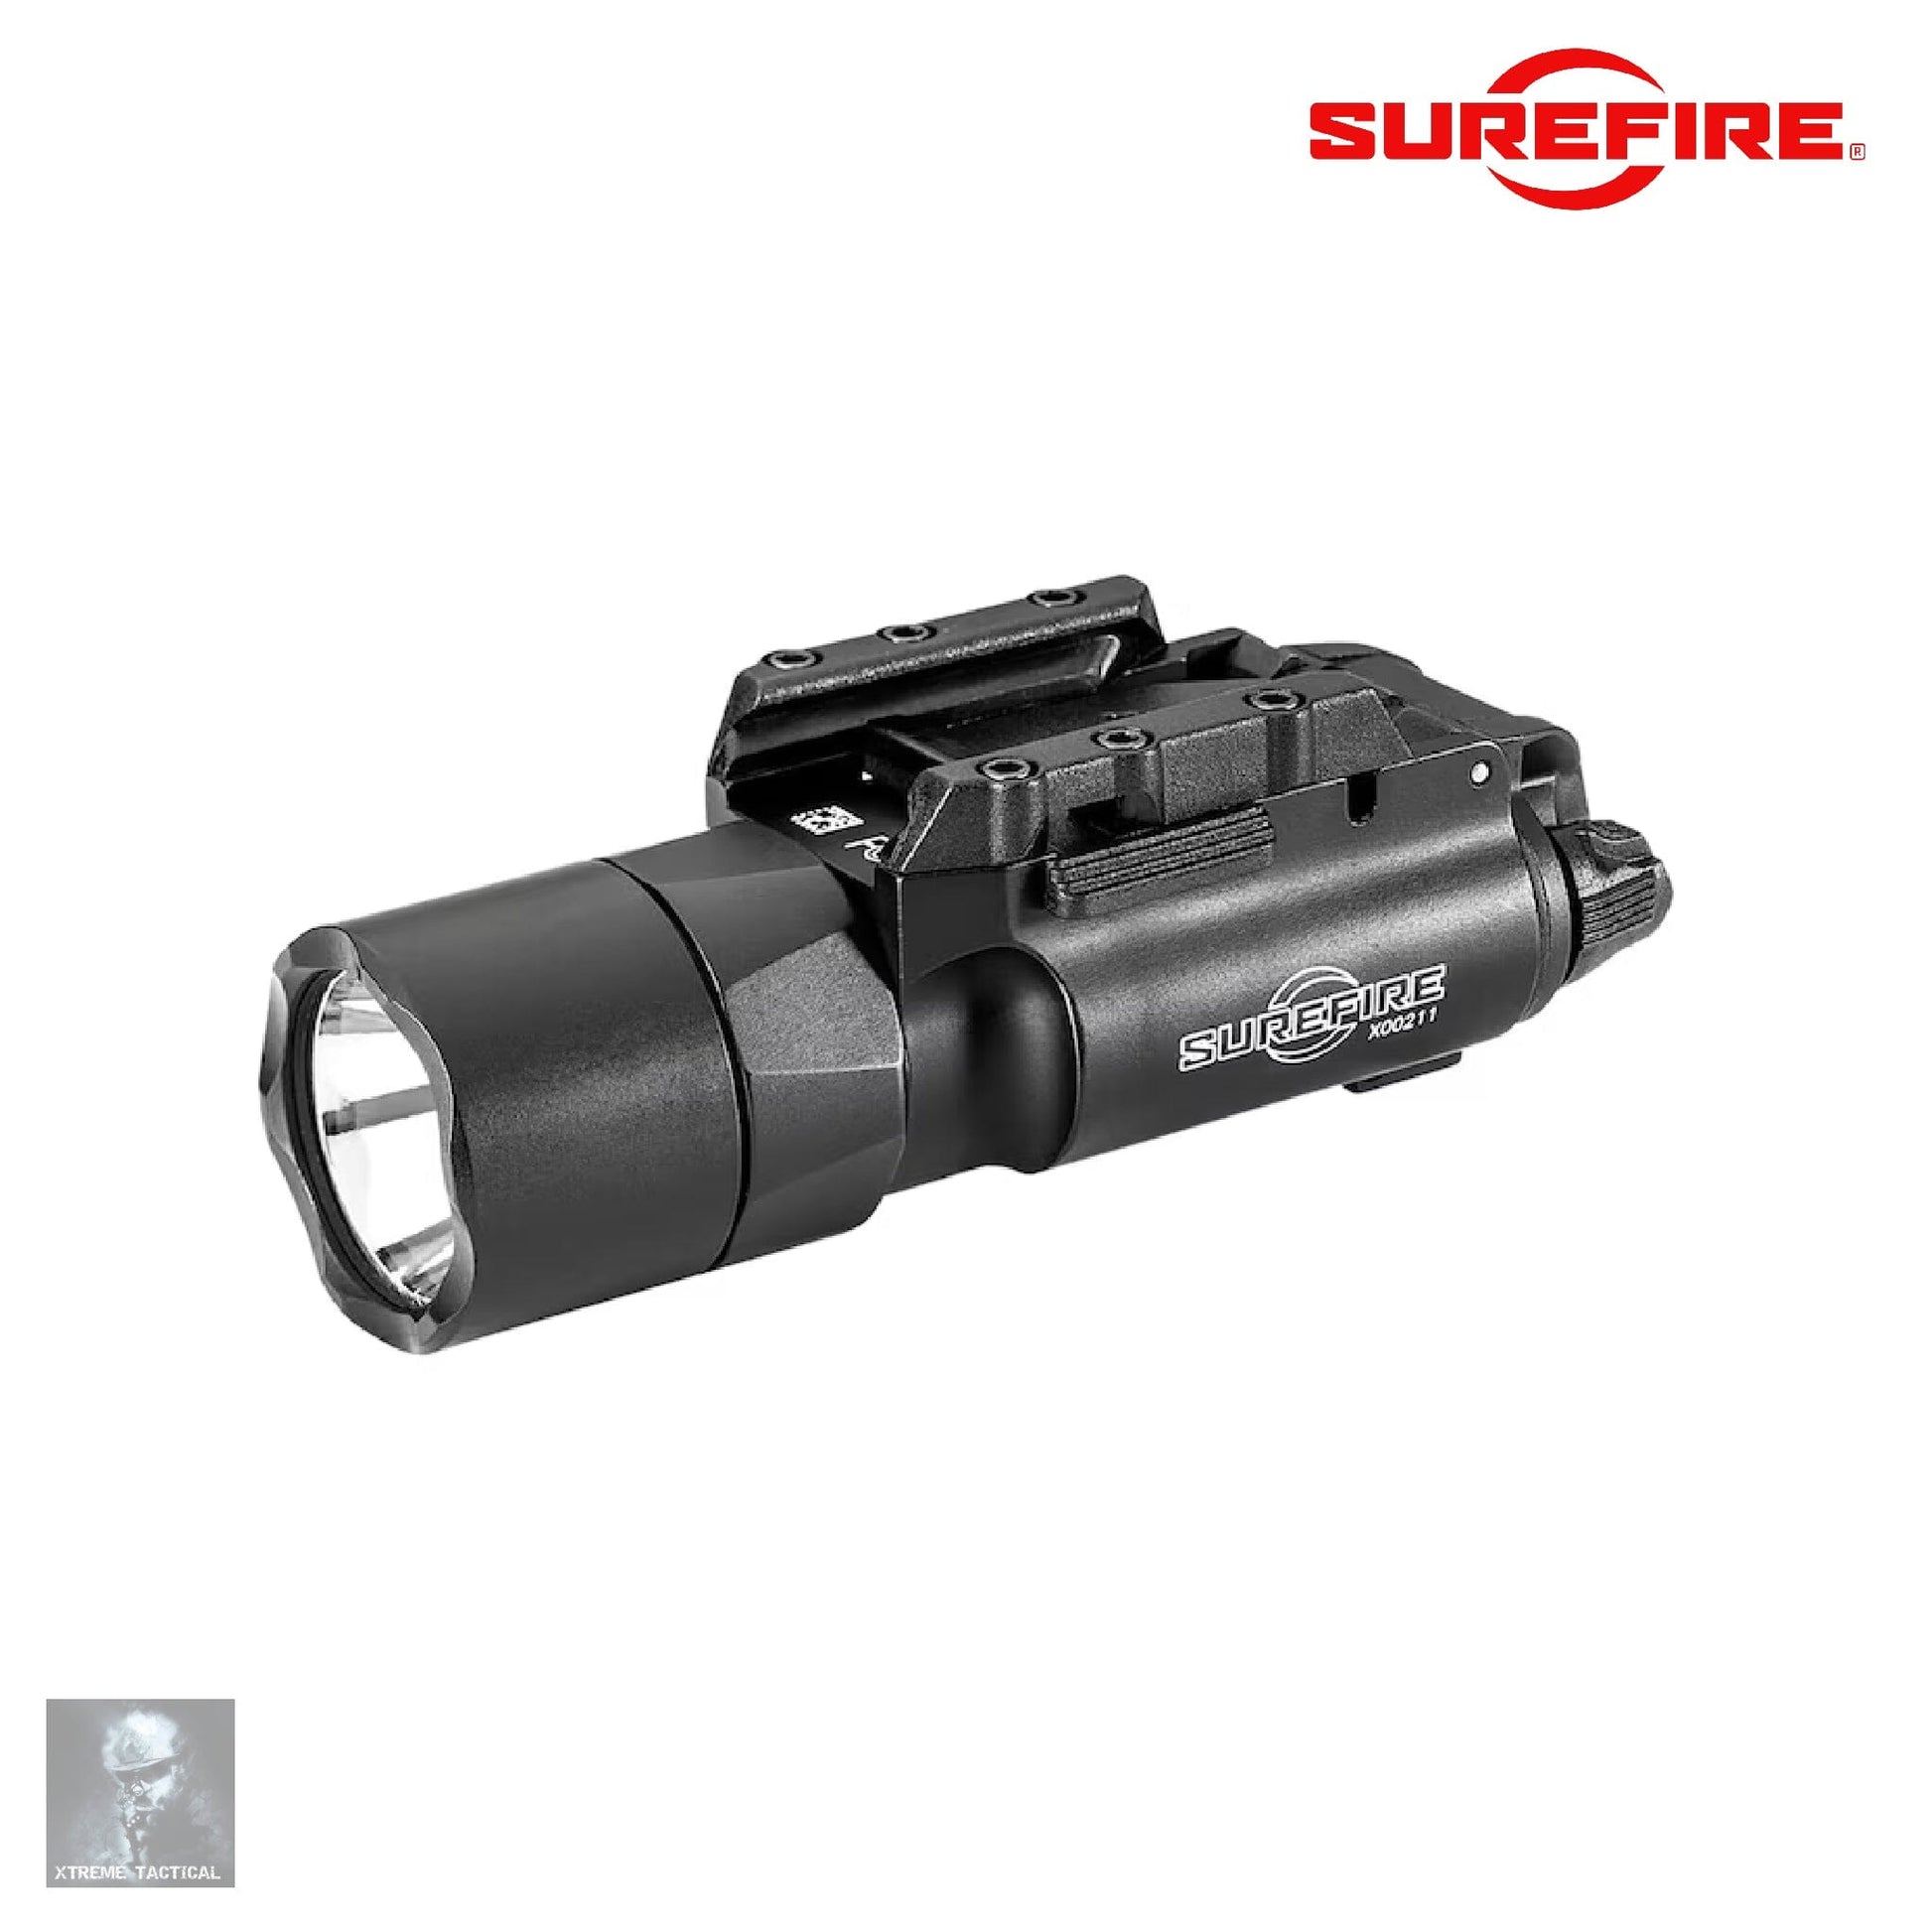 SureFire X300T-A Turbo Weapon Light Black Weapon Light SureFire 